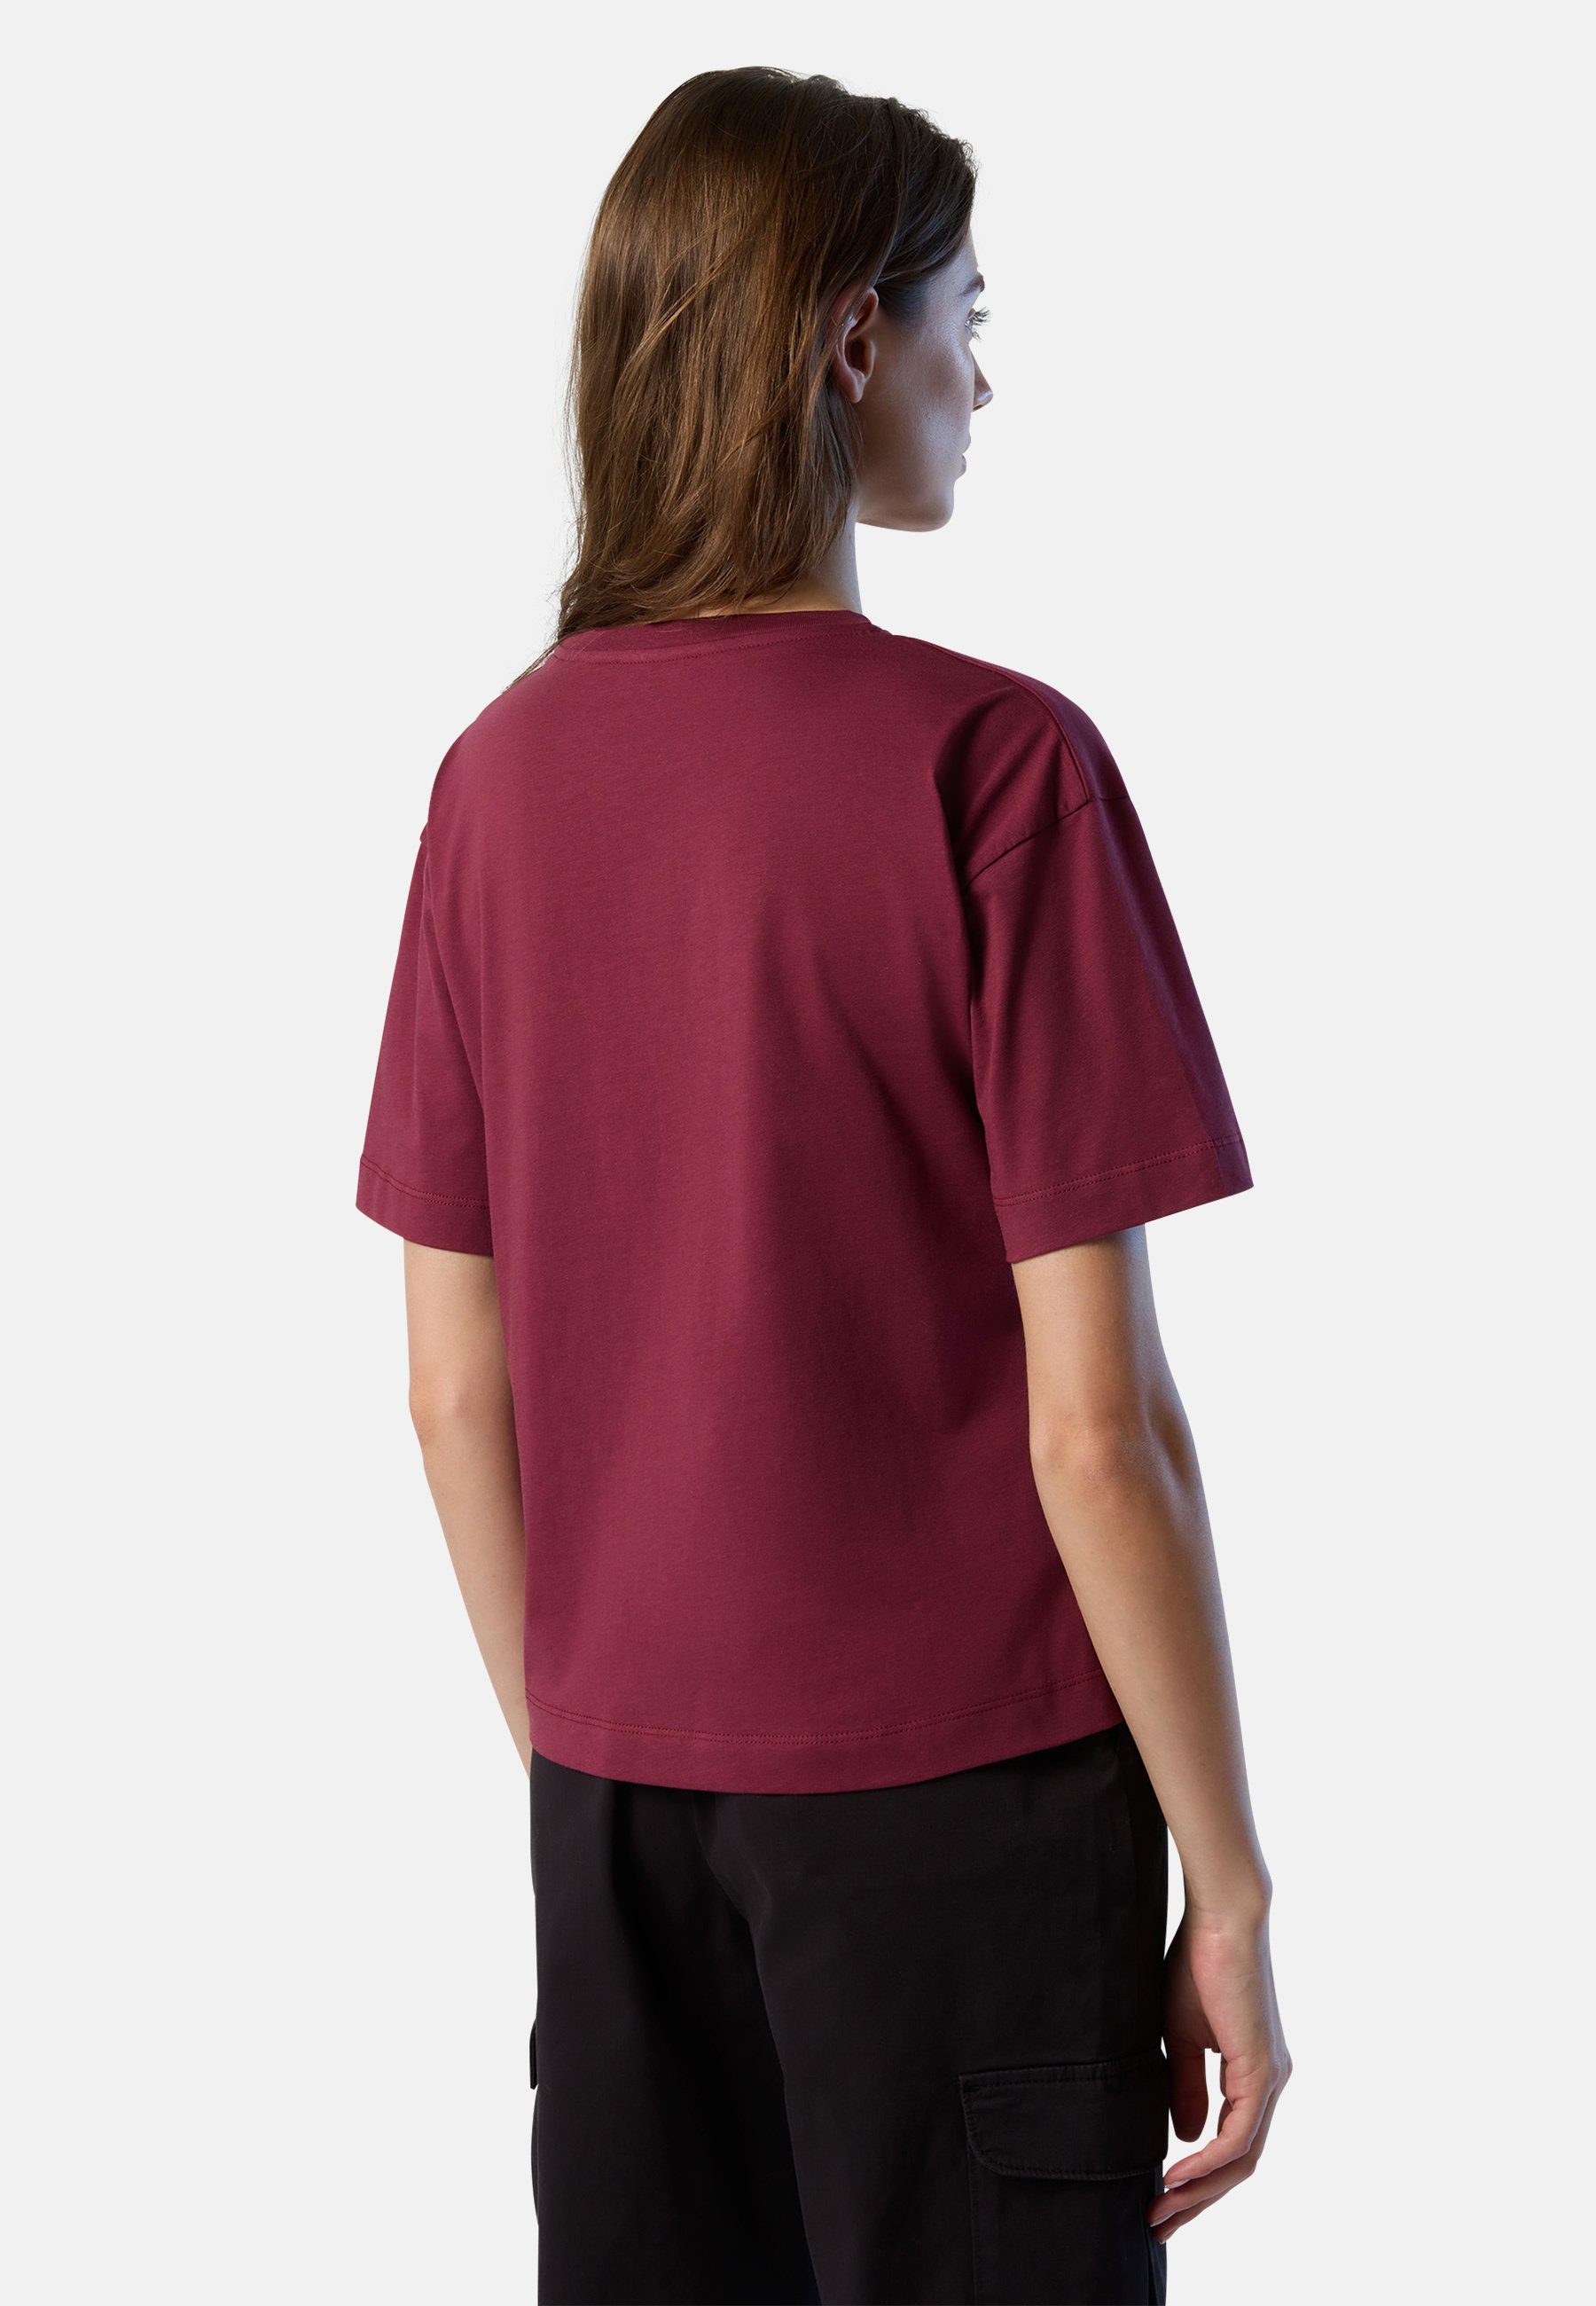 North Sails burgunder Design mit T-Shirt Slogan-Print klassischem T-Shirt mit